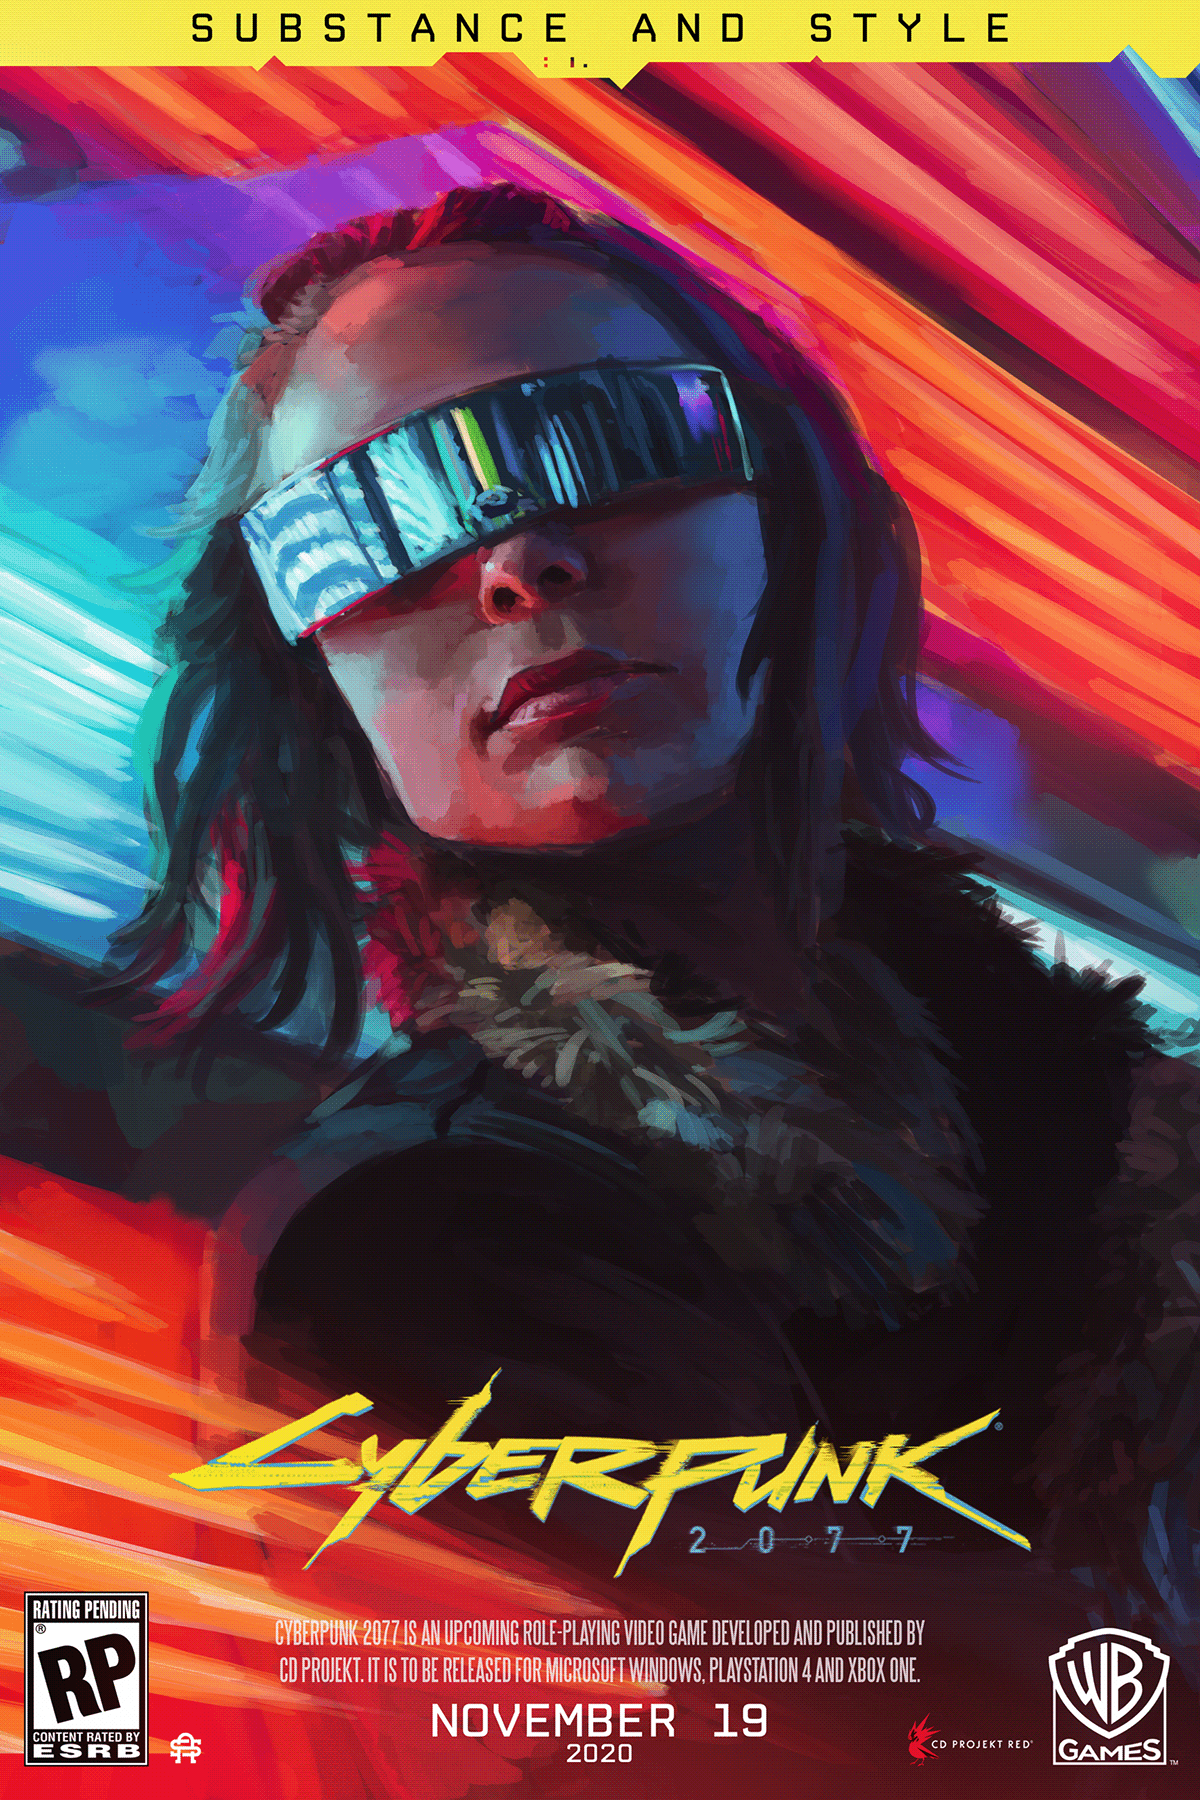 80s 90s Cyberpunk cyberpunk 2077 futuristic glow Magical ps5 Retro Synthwave